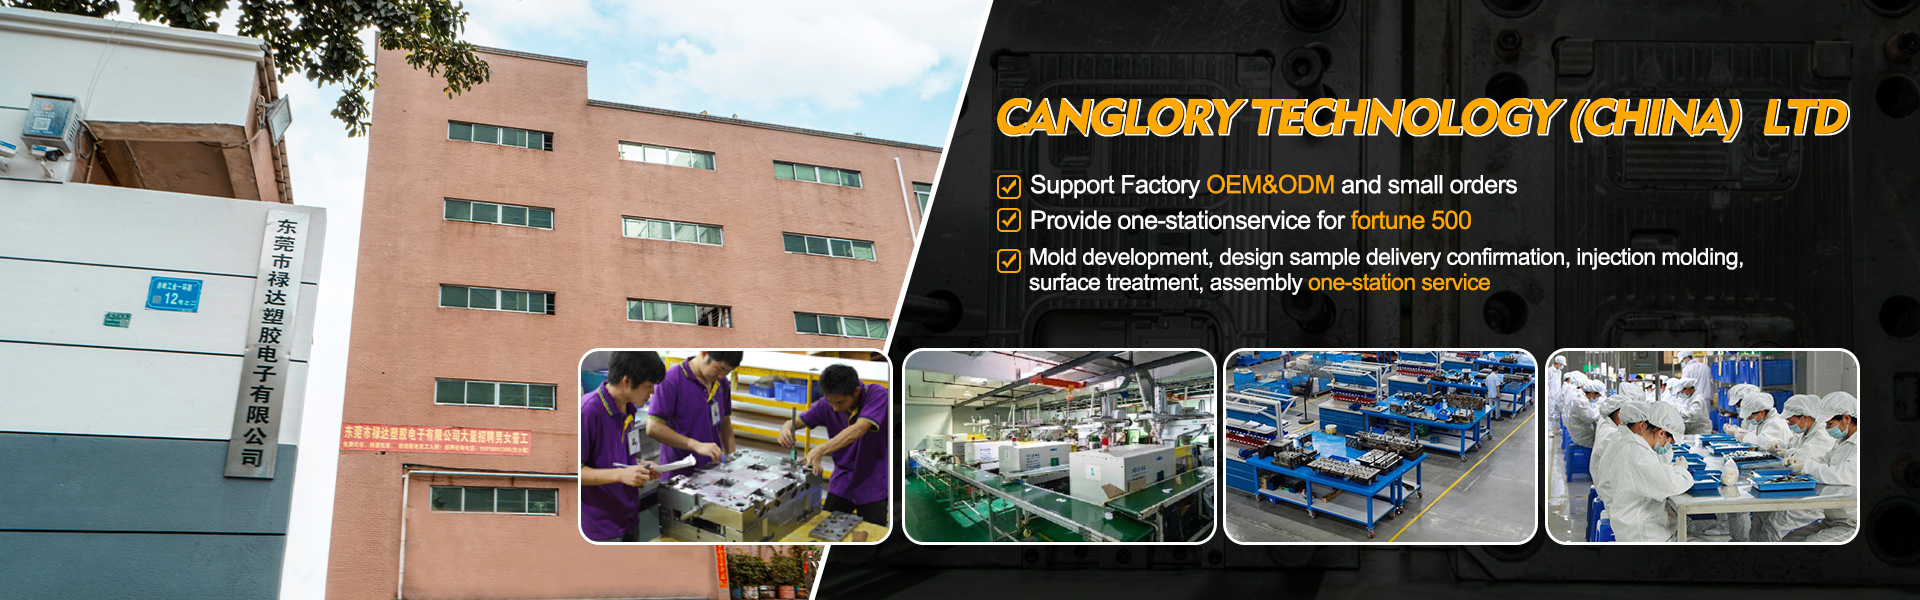 Dom - Formowanie, wtrysk, oryginalny producent sprzętu|Canglory Technology (China) Ltd